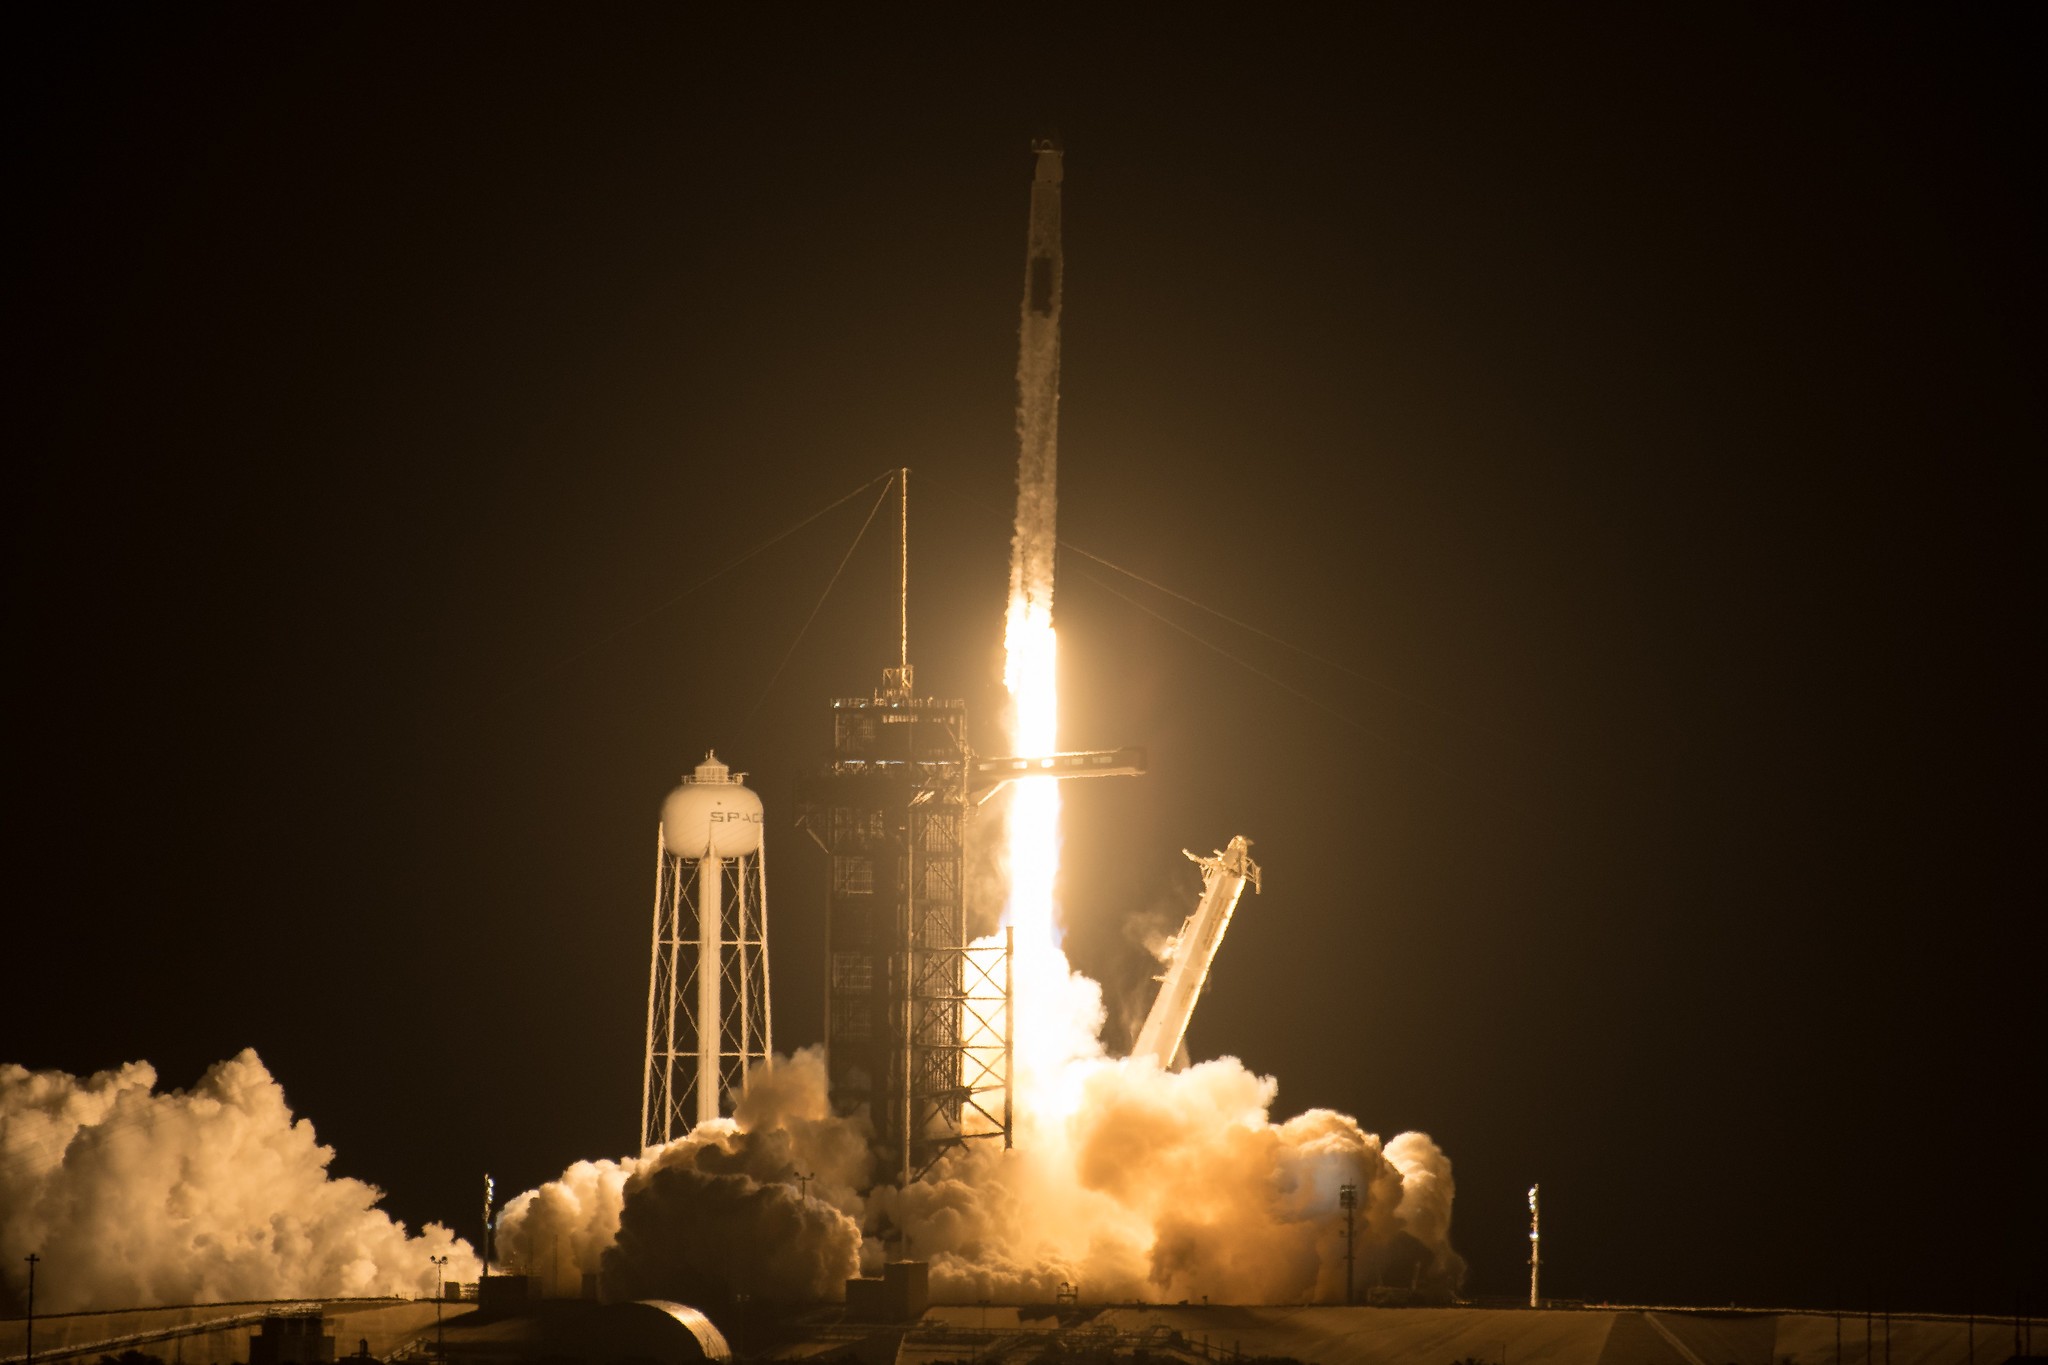 Foguete Crew Dragon foi lançado nesta sexta (23) à Estação Espacial Internacional. A bordo, a tripulação 2 da missão da Nasa e SpaceX (Foto: Nasa)